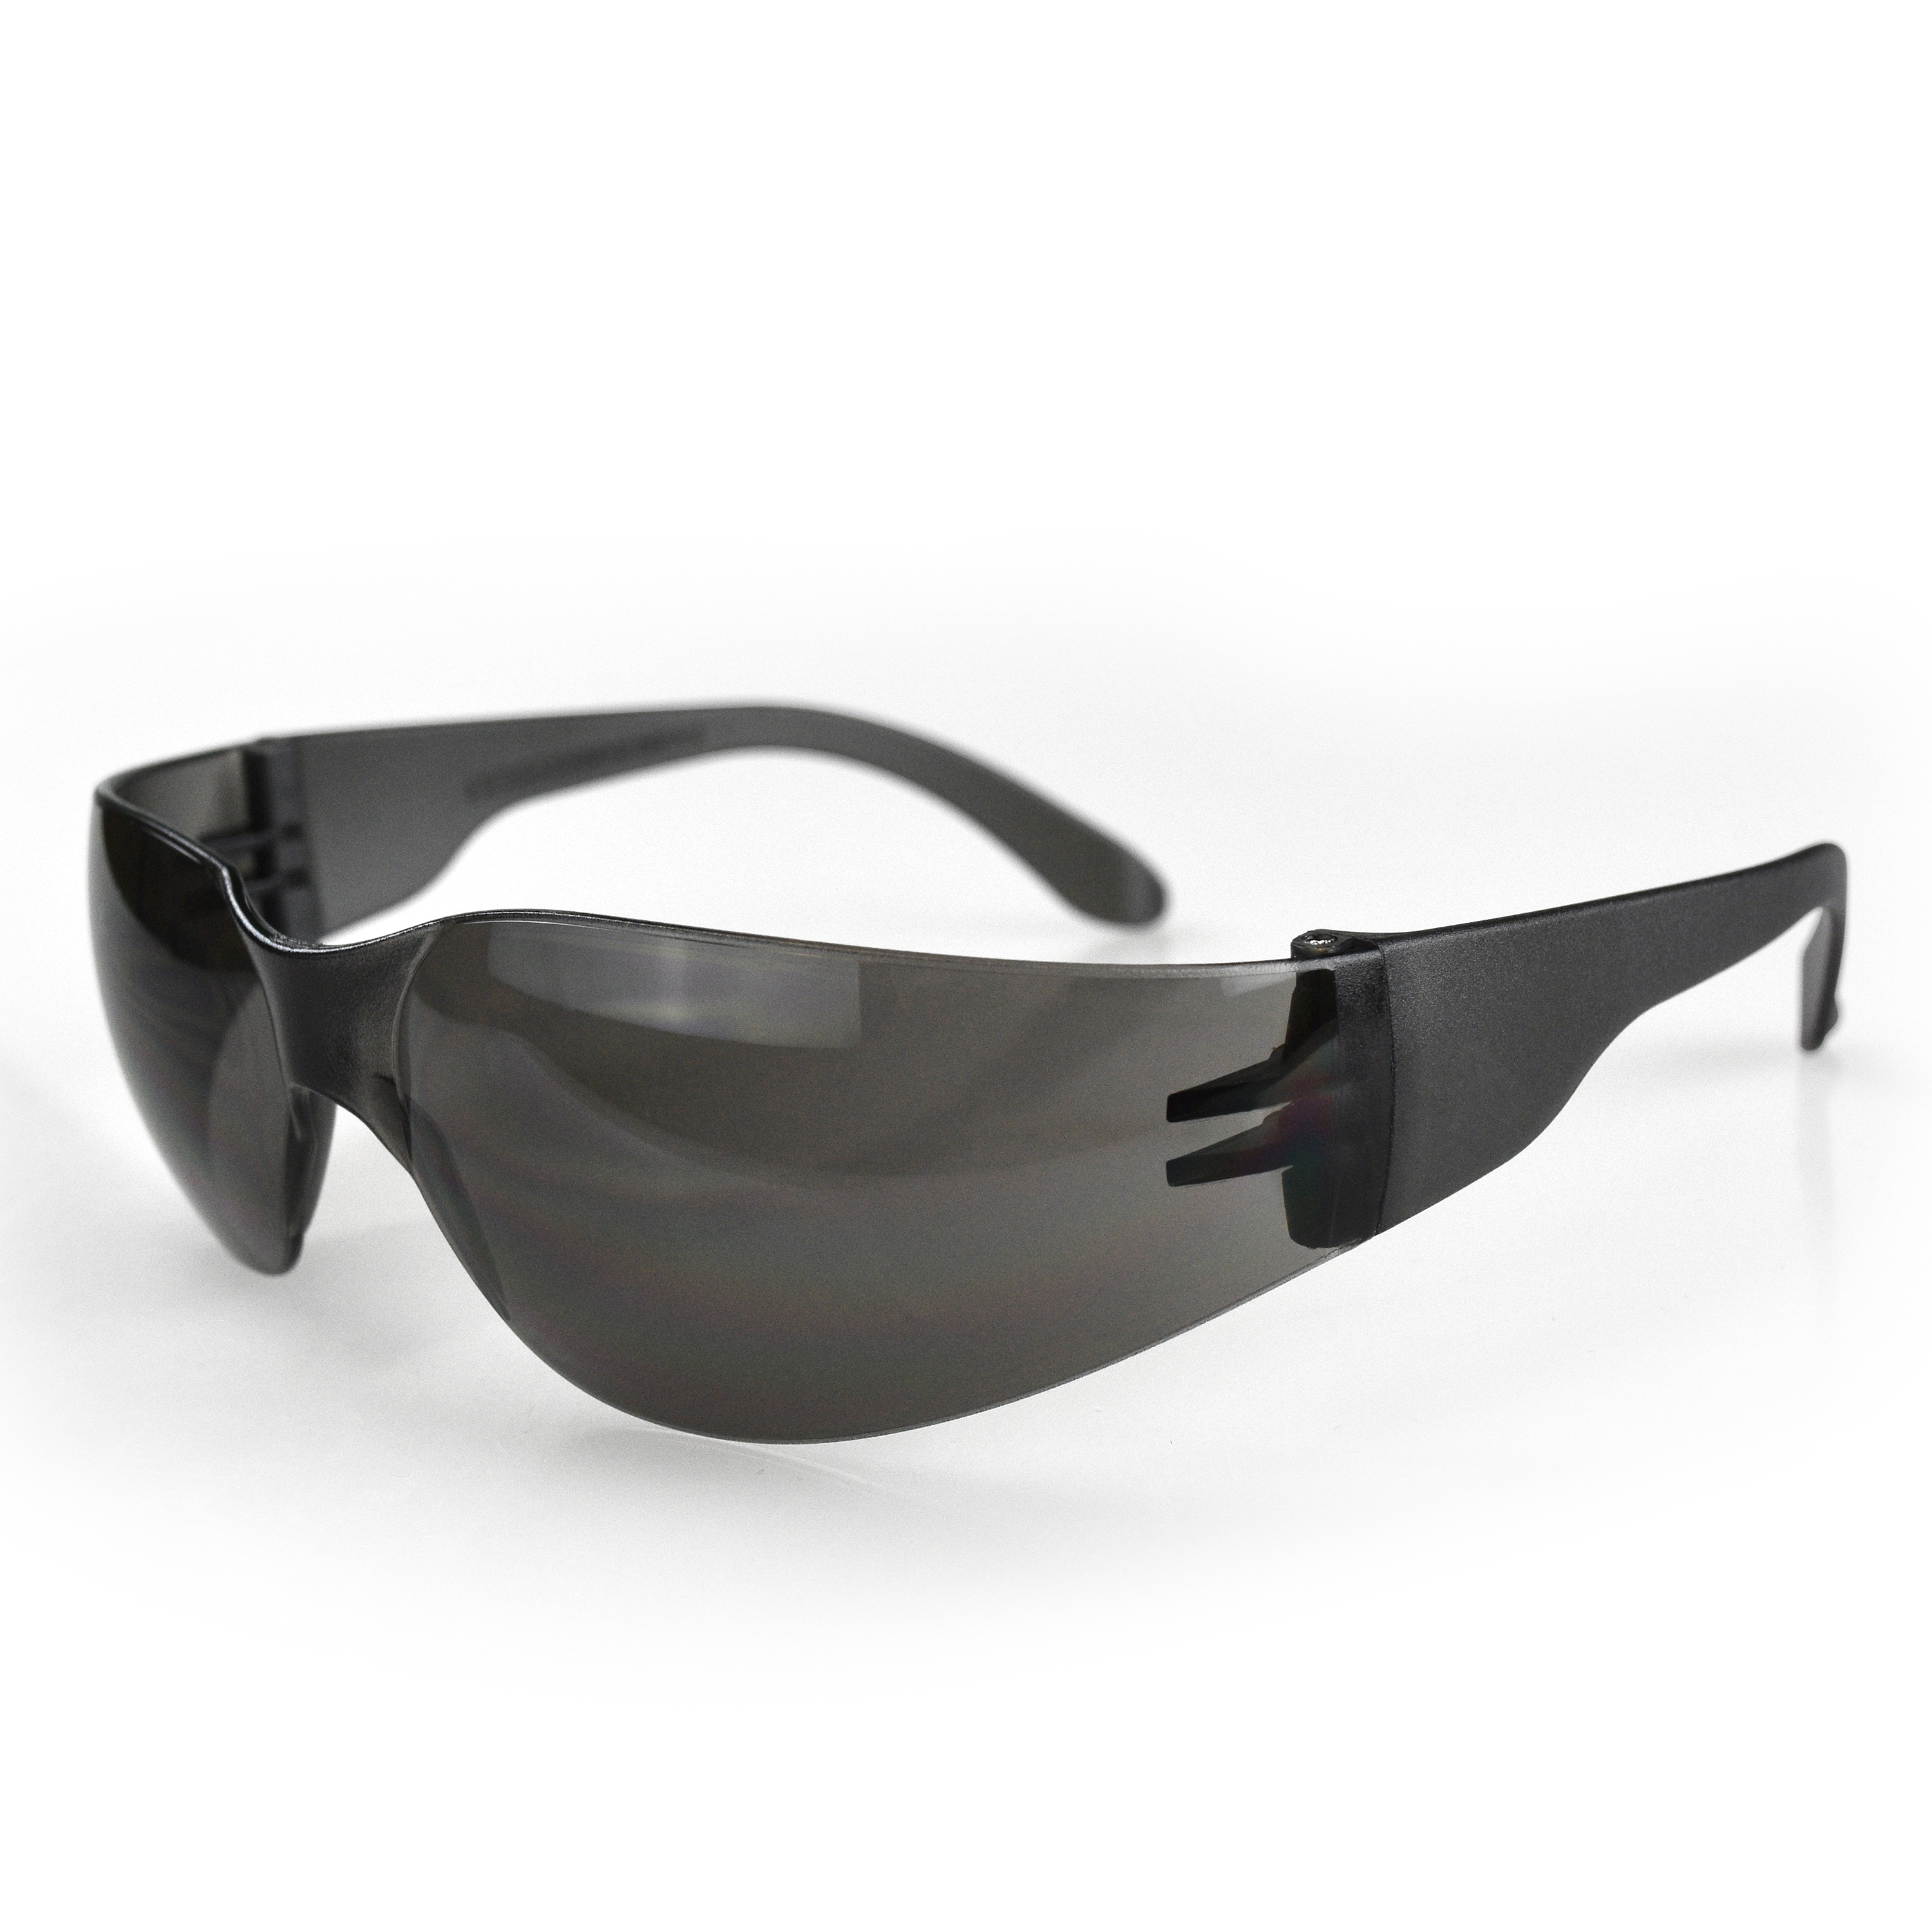 Mirage™ Safety Eyewear - Smoke Frame - Smoke Anti-Fog Lens